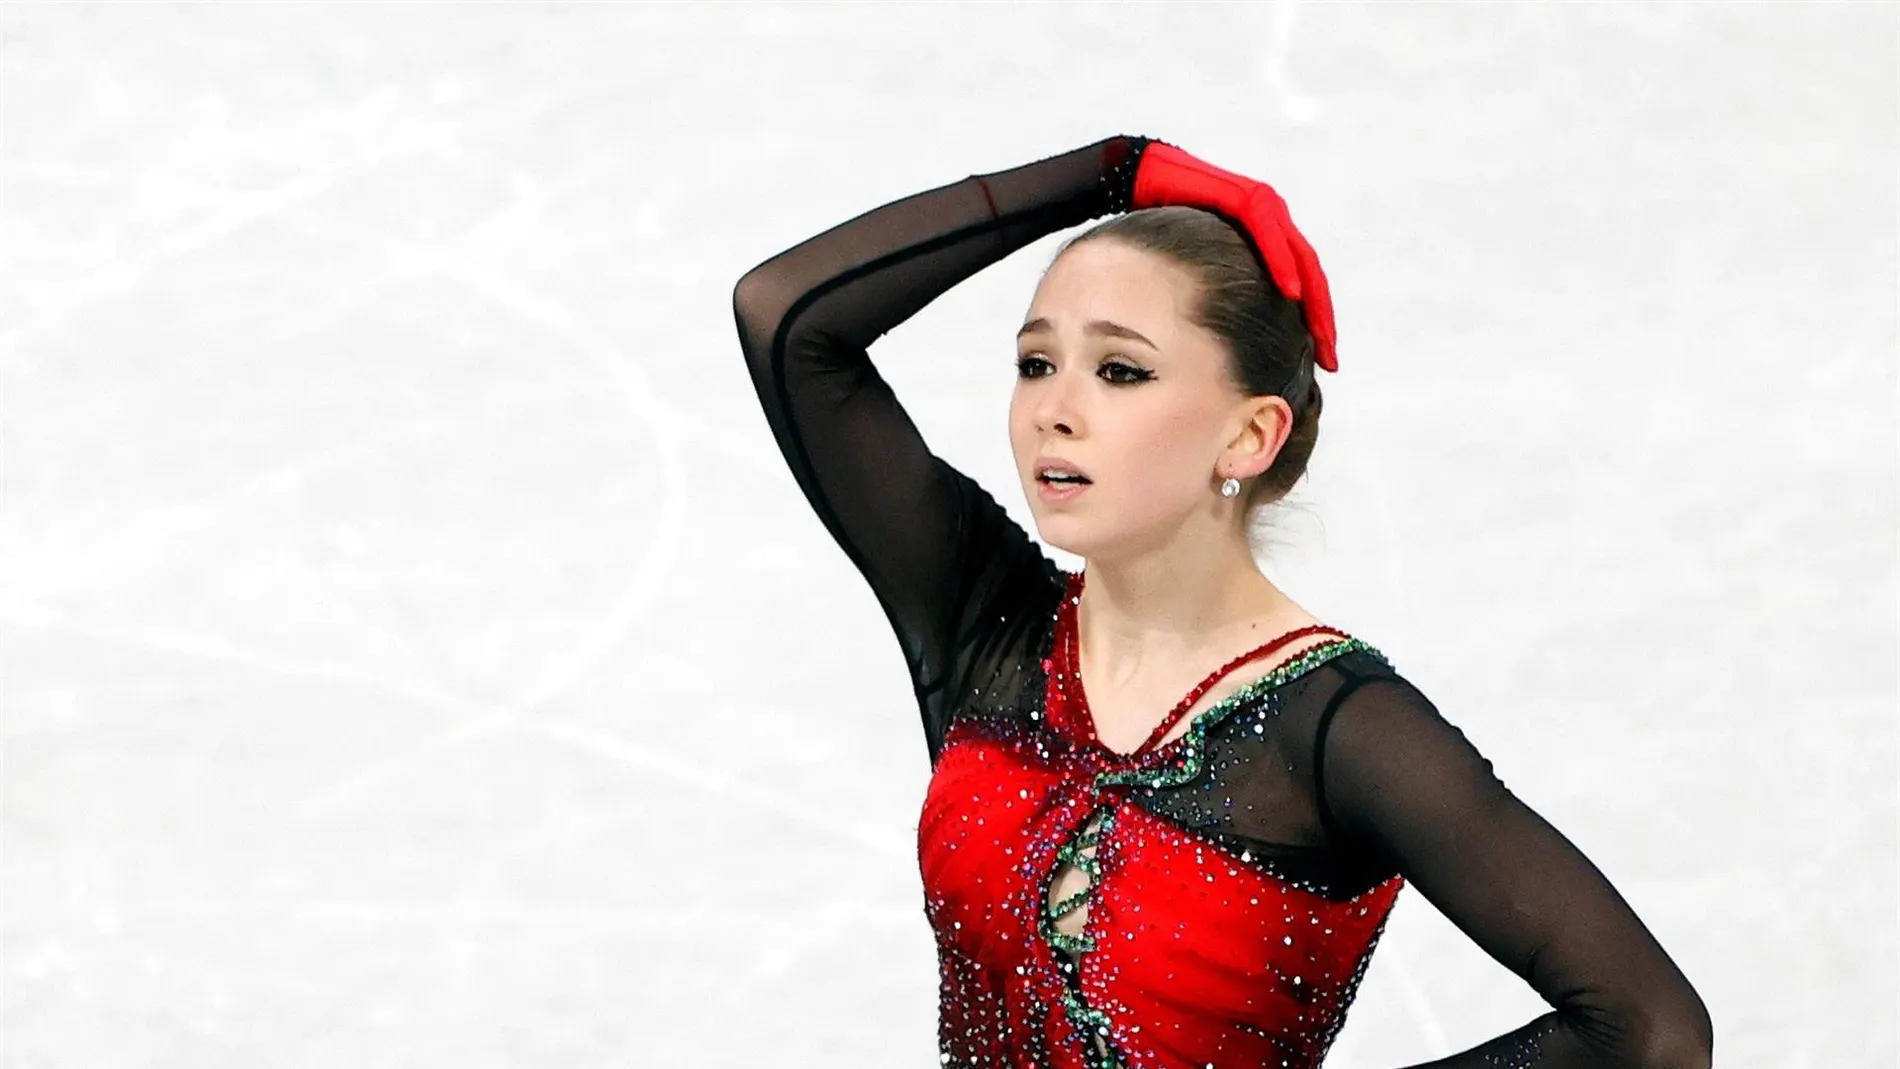 Kamila Valieva en los Juegos de Pekín